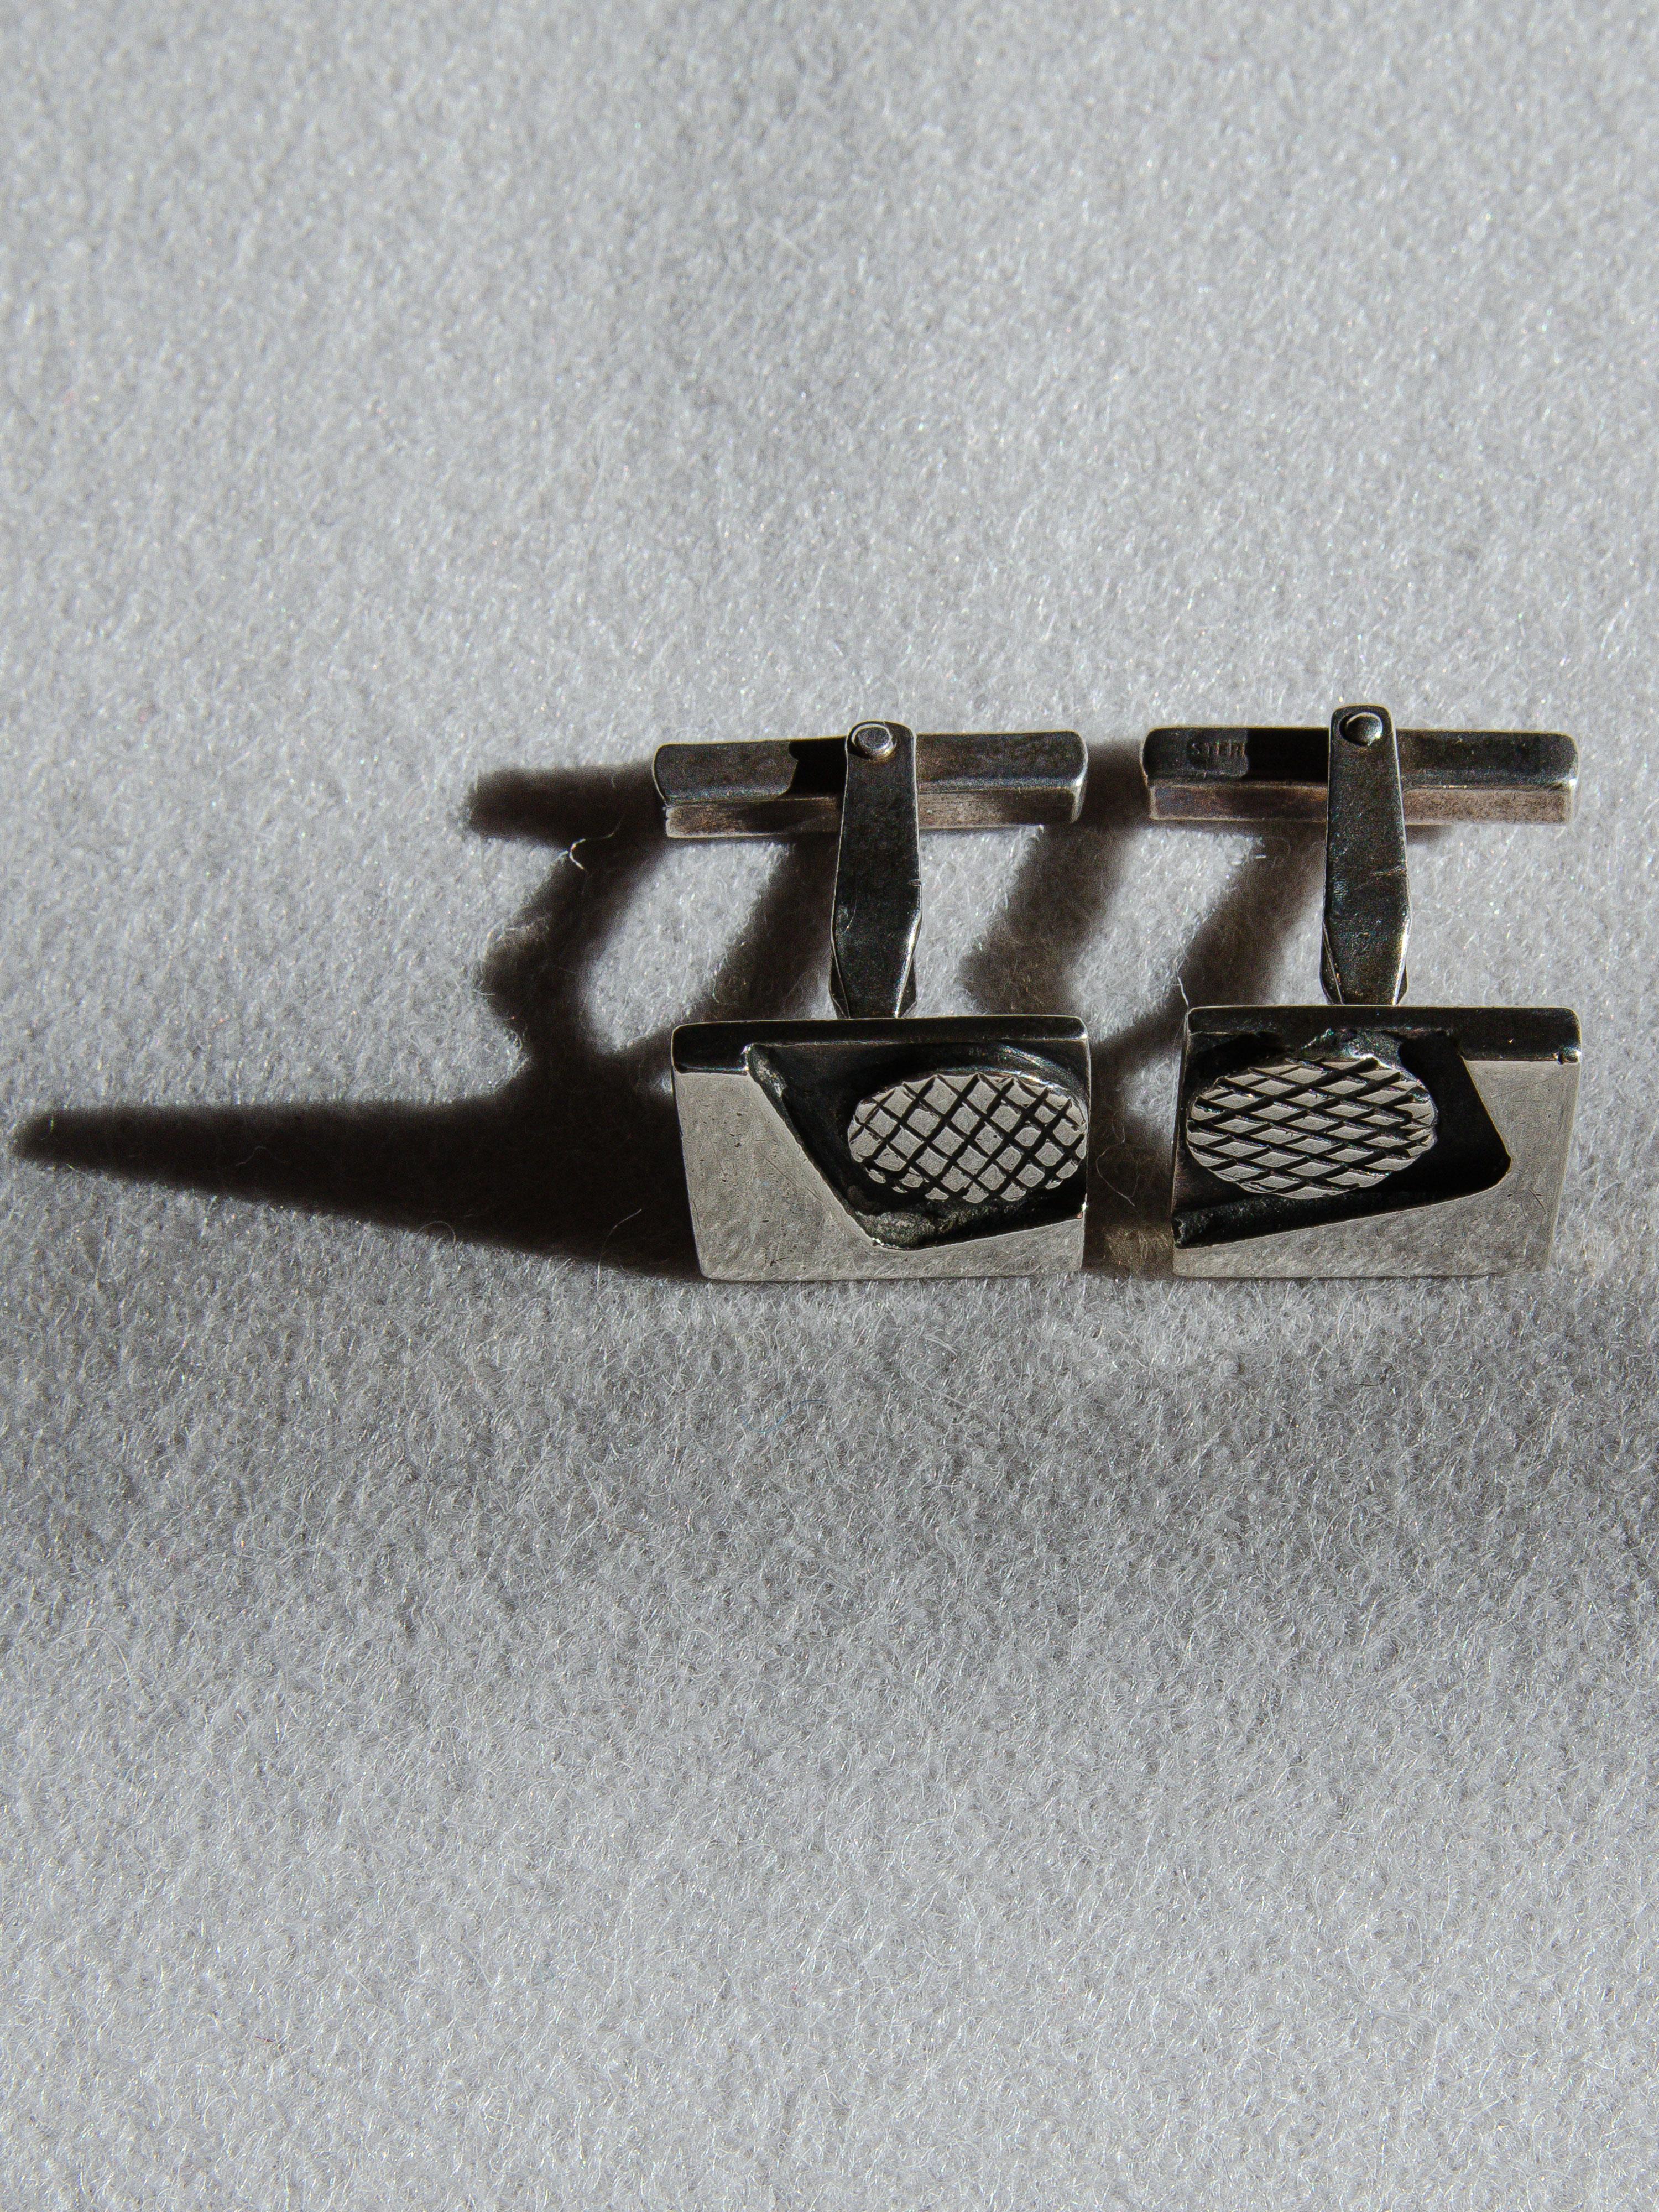 Seltenes Paar Manschettenknöpfe aus Sterlingsilber, entworfen von Margaret DePatta (1903-1964), einer der einflussreichsten und meistgesammelten Juweliere der Moderne des 20. Jahrhunderts. Ihr Festhalten am Bauhaus-Design und ihre risikofreudigen